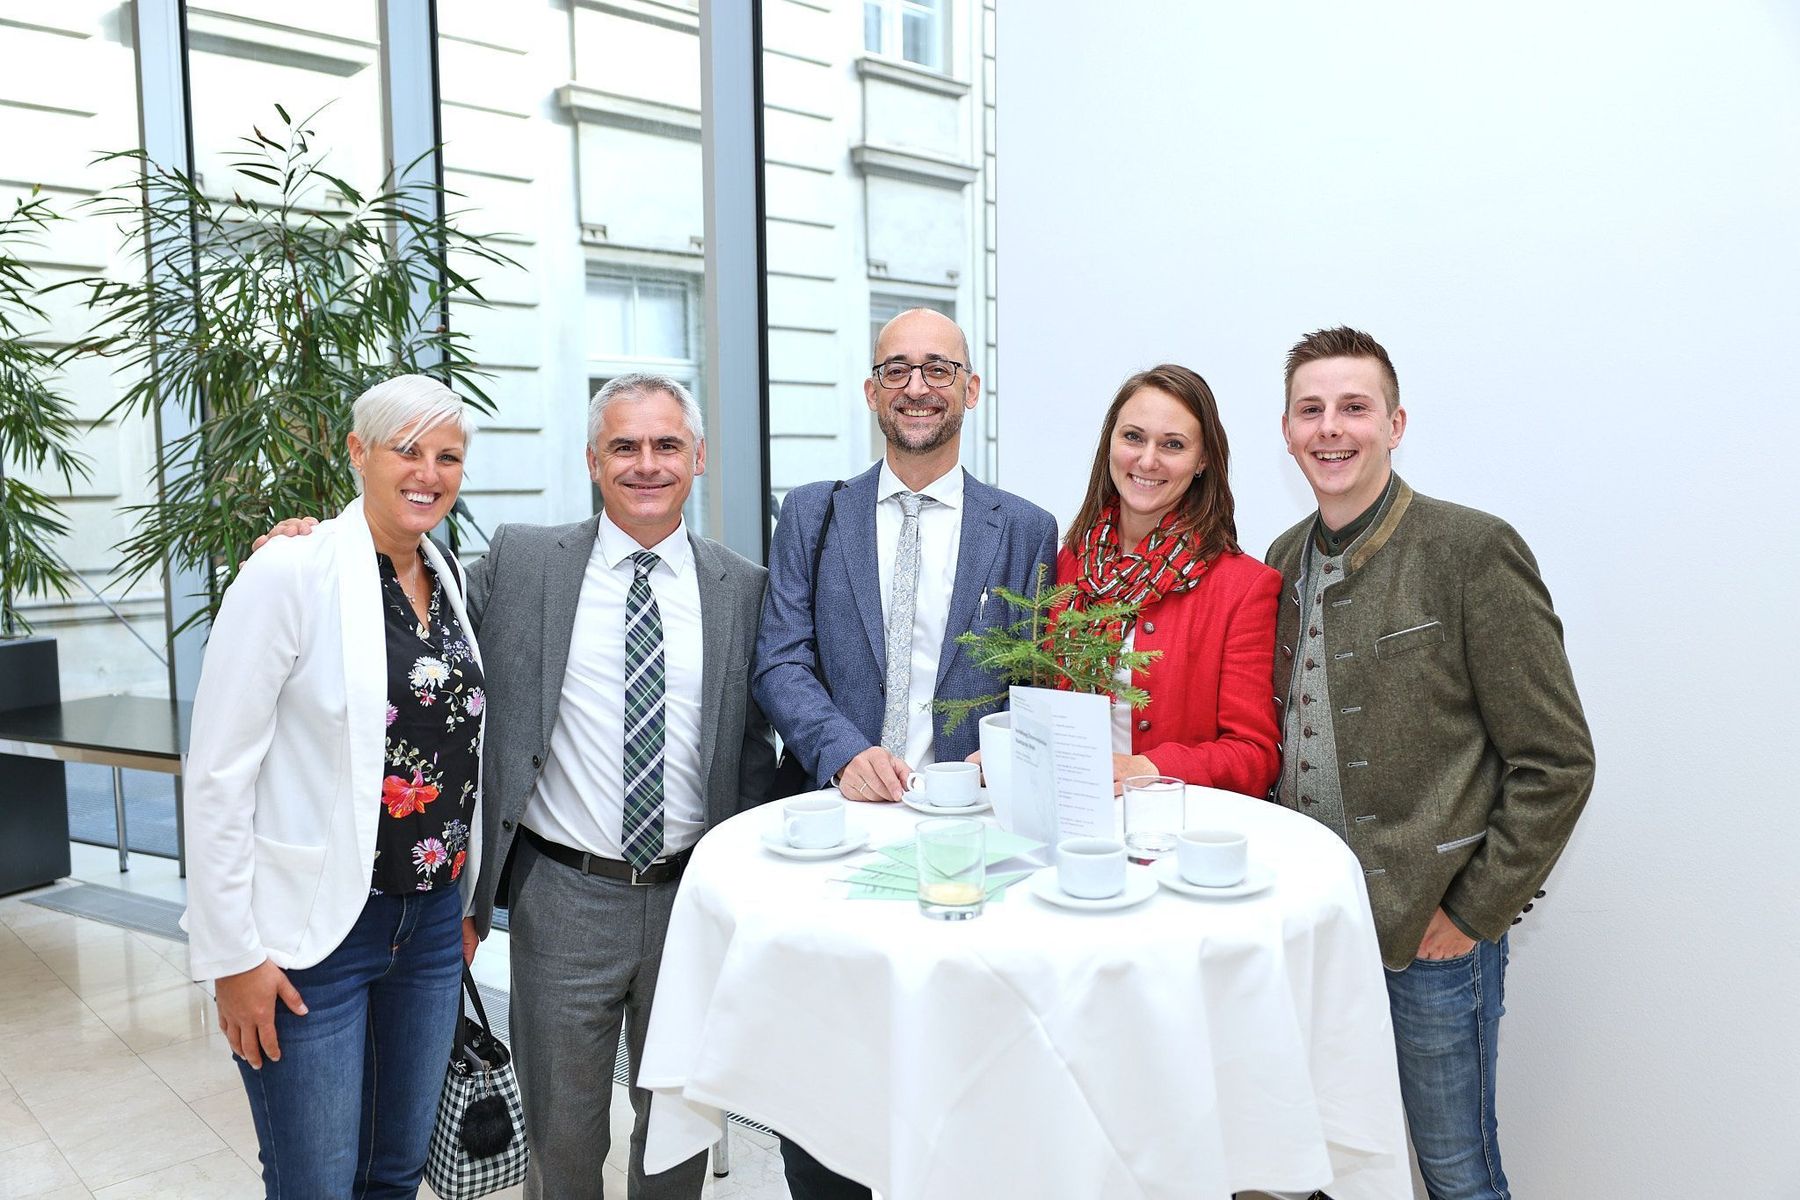 Staatspreisverleihung Wald 2022: Die Preisträger aus Niederösterreich